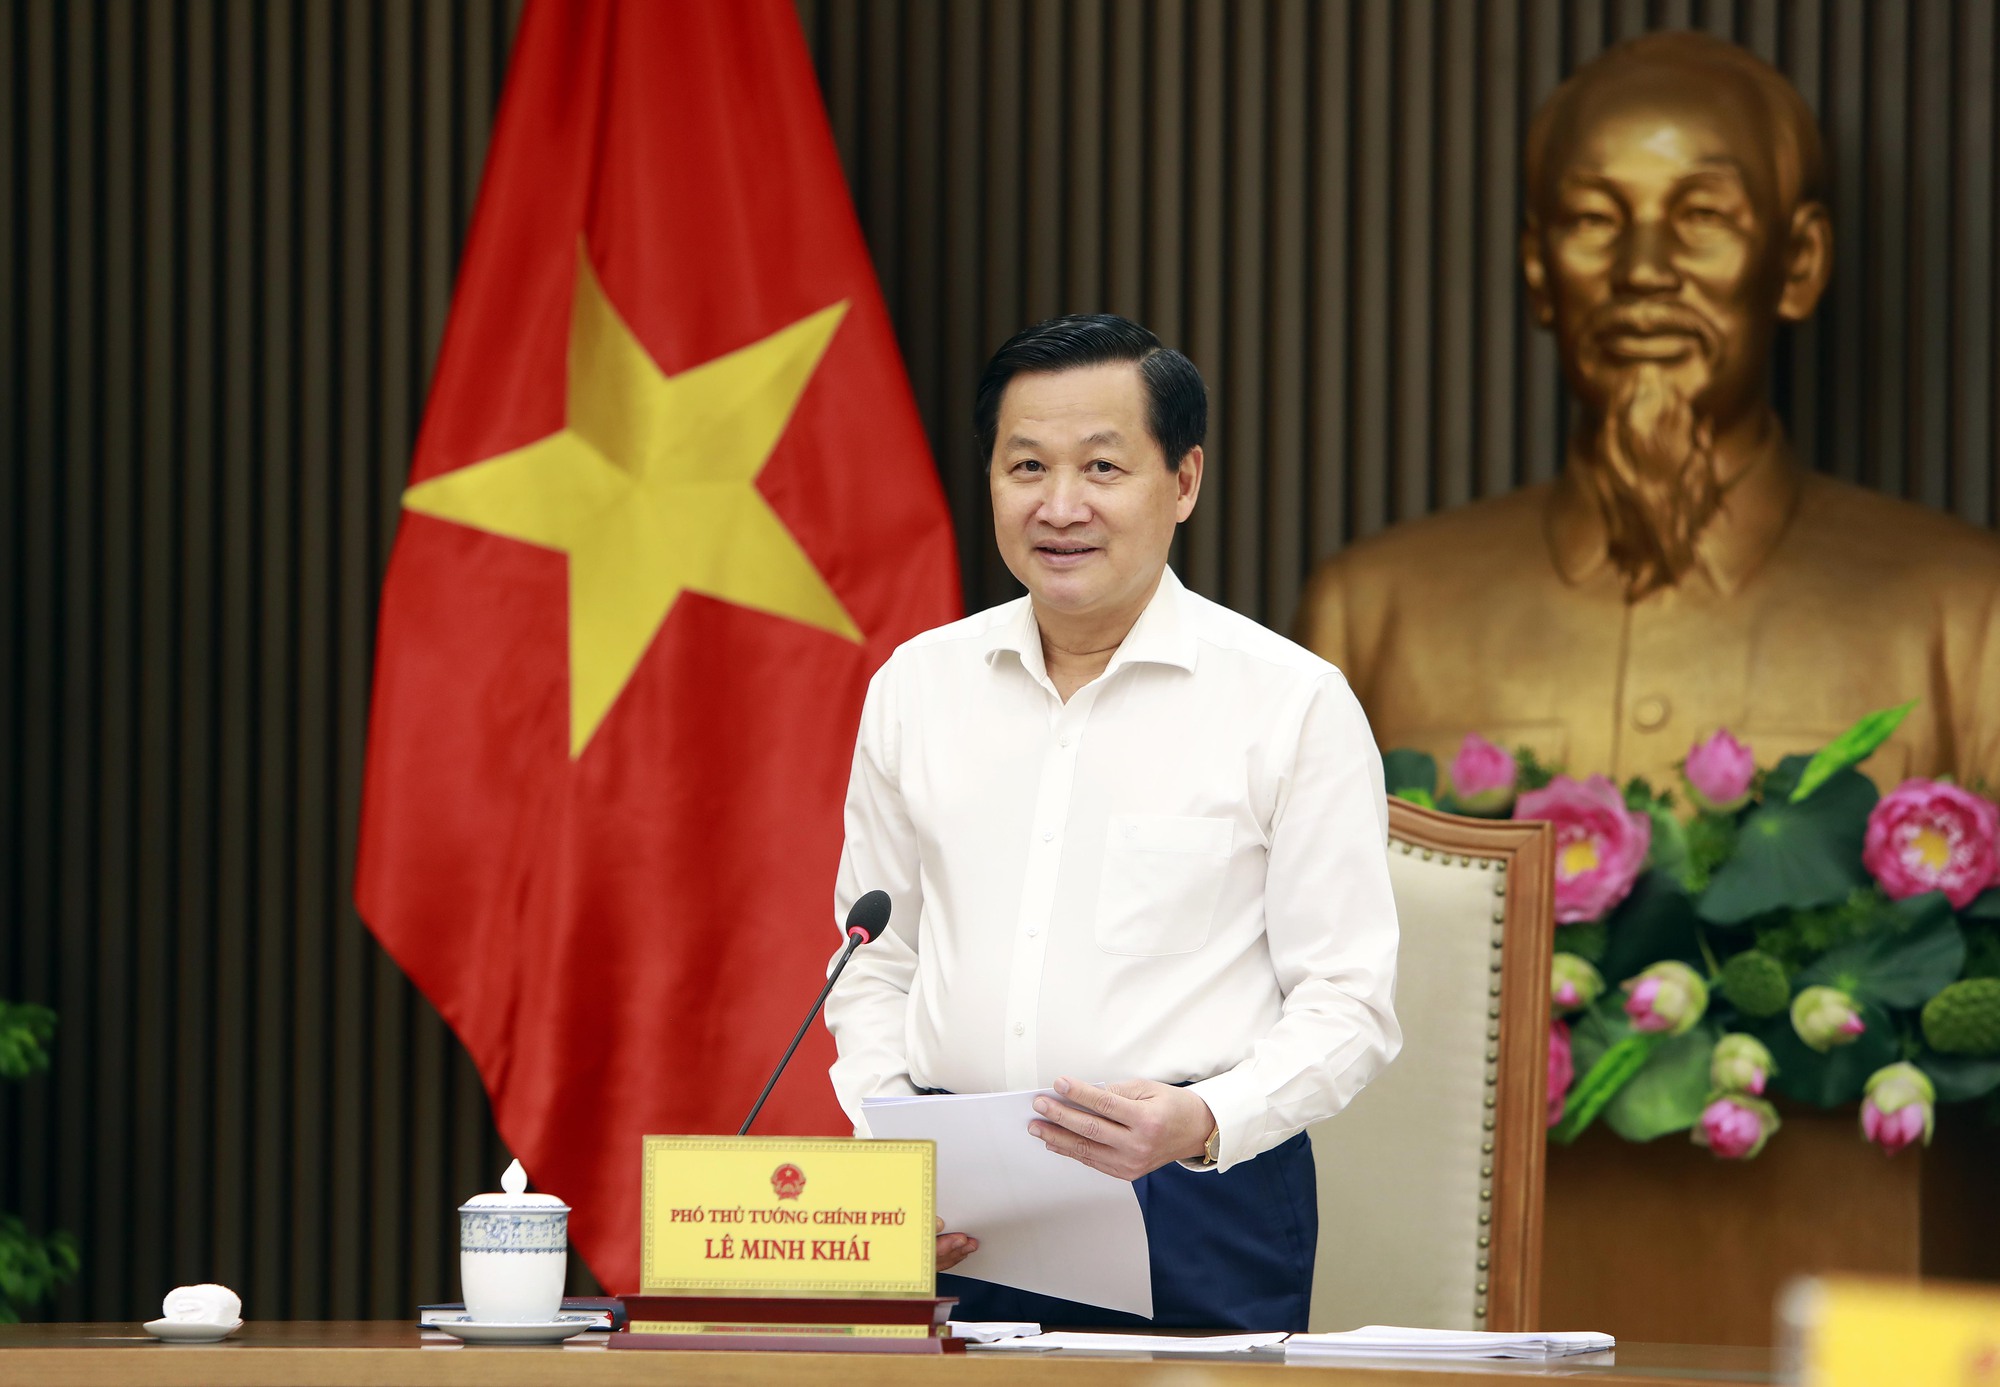 Phó Thủ tướng Lê Minh Khái: Các tỉnh nói khó giải ngân vốn là “nêu cho có chứ không sát thực” - Ảnh 1.